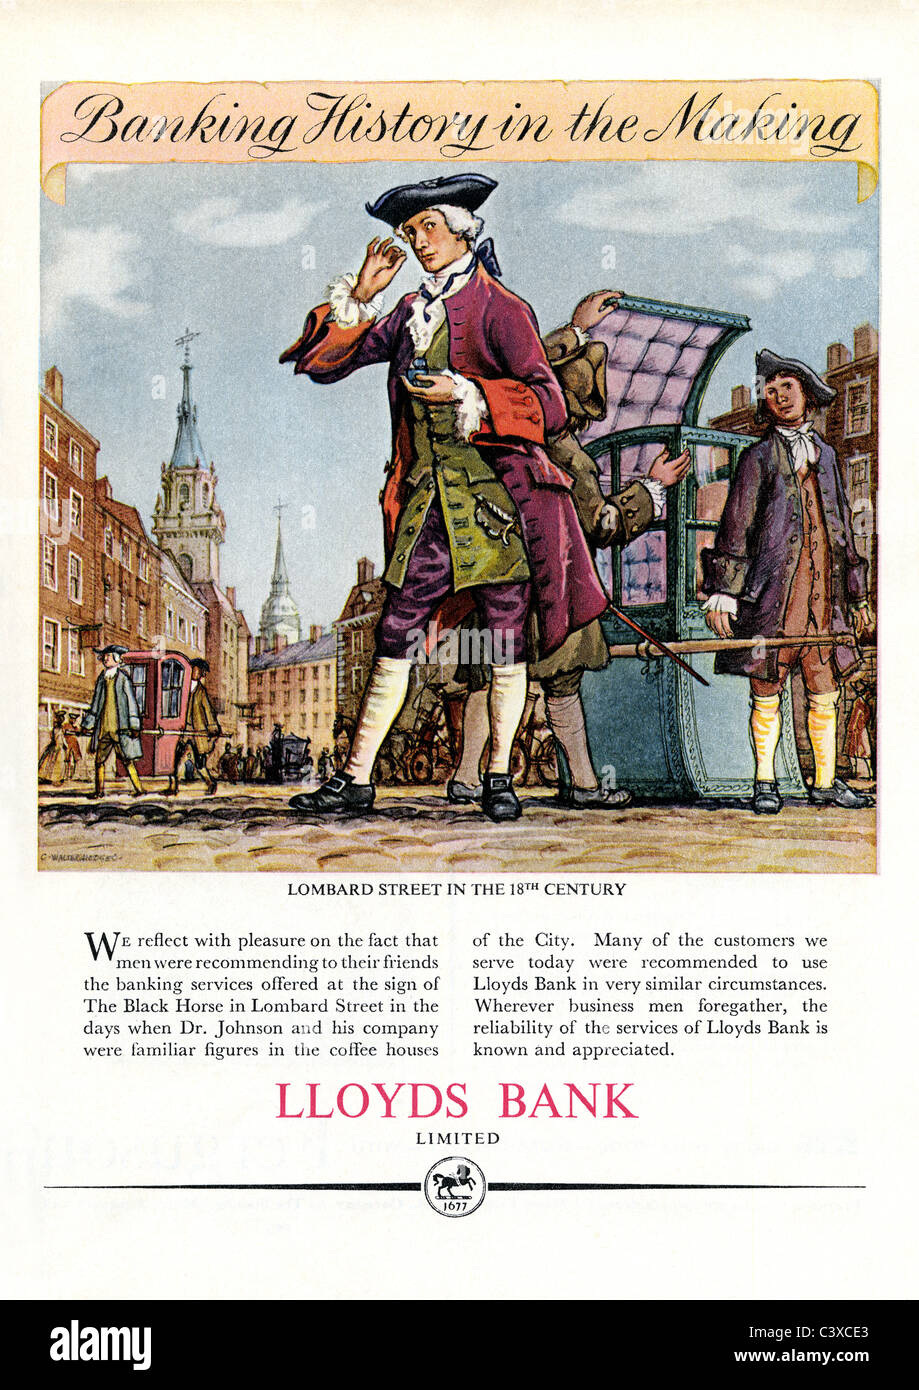 Publicité pour la Lloyds Bank, de la Festival de Grande-Bretagne guide, publié par HMSO. Londres, Royaume-Uni, 1951 Banque D'Images